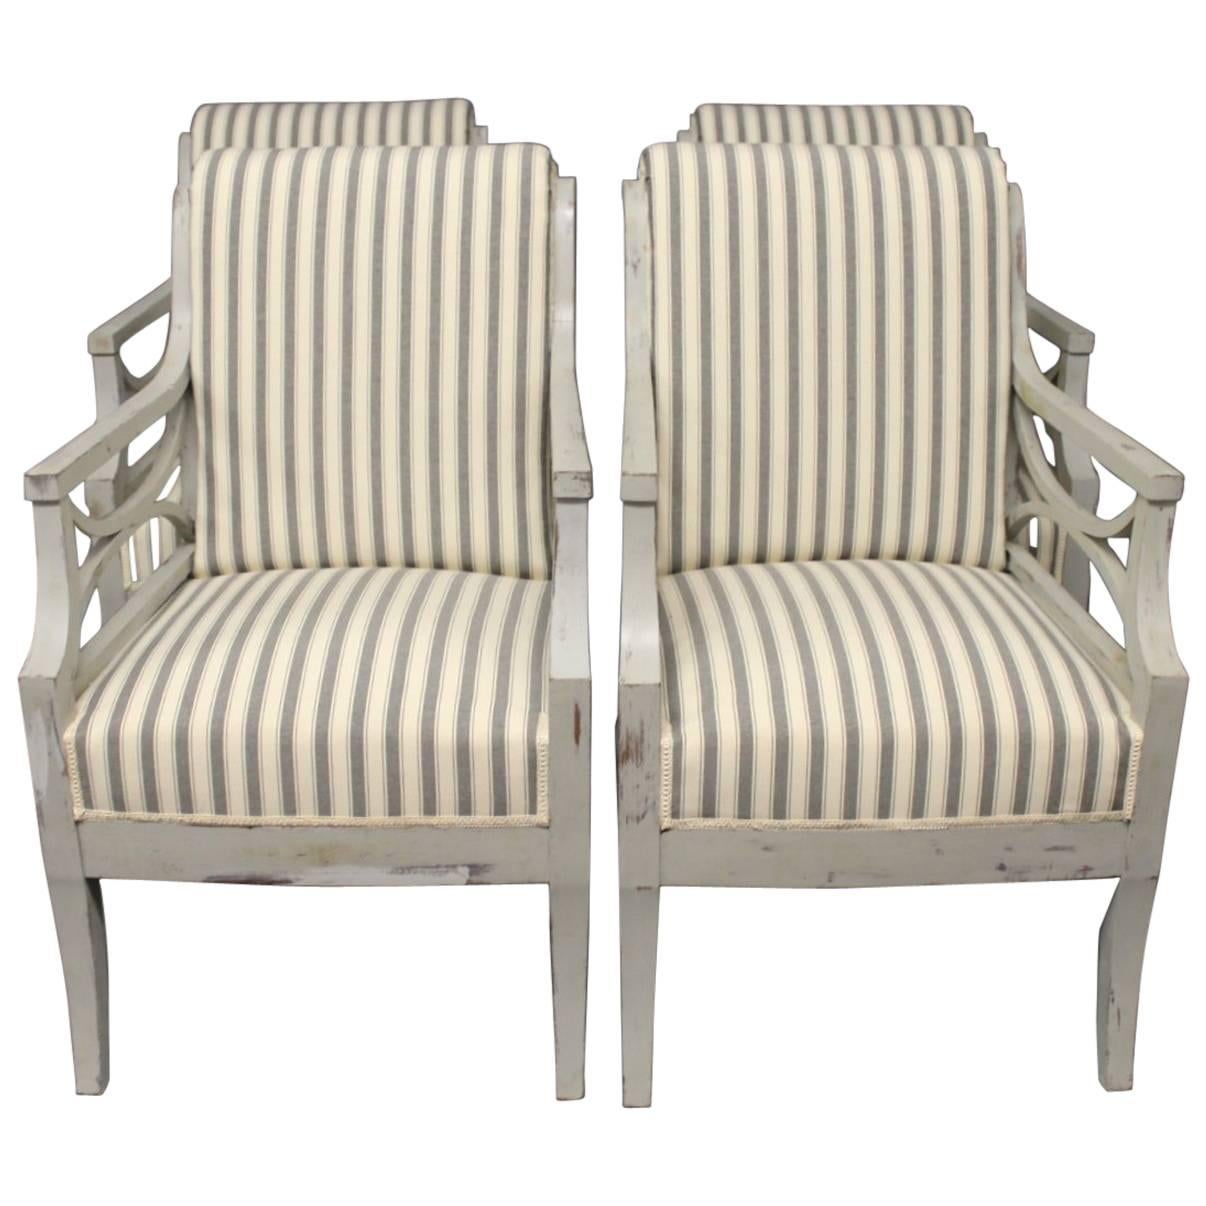 Die beiden gustavianischen Sessel aus der Zeit um 1810 weisen eine schöne Patina auf, die ihrem Aussehen Charakter und Geschichte verleiht. Die Stühle sind aus grau lackiertem Holz gefertigt, was ihnen ein zeitloses und elegantes Aussehen verleiht,